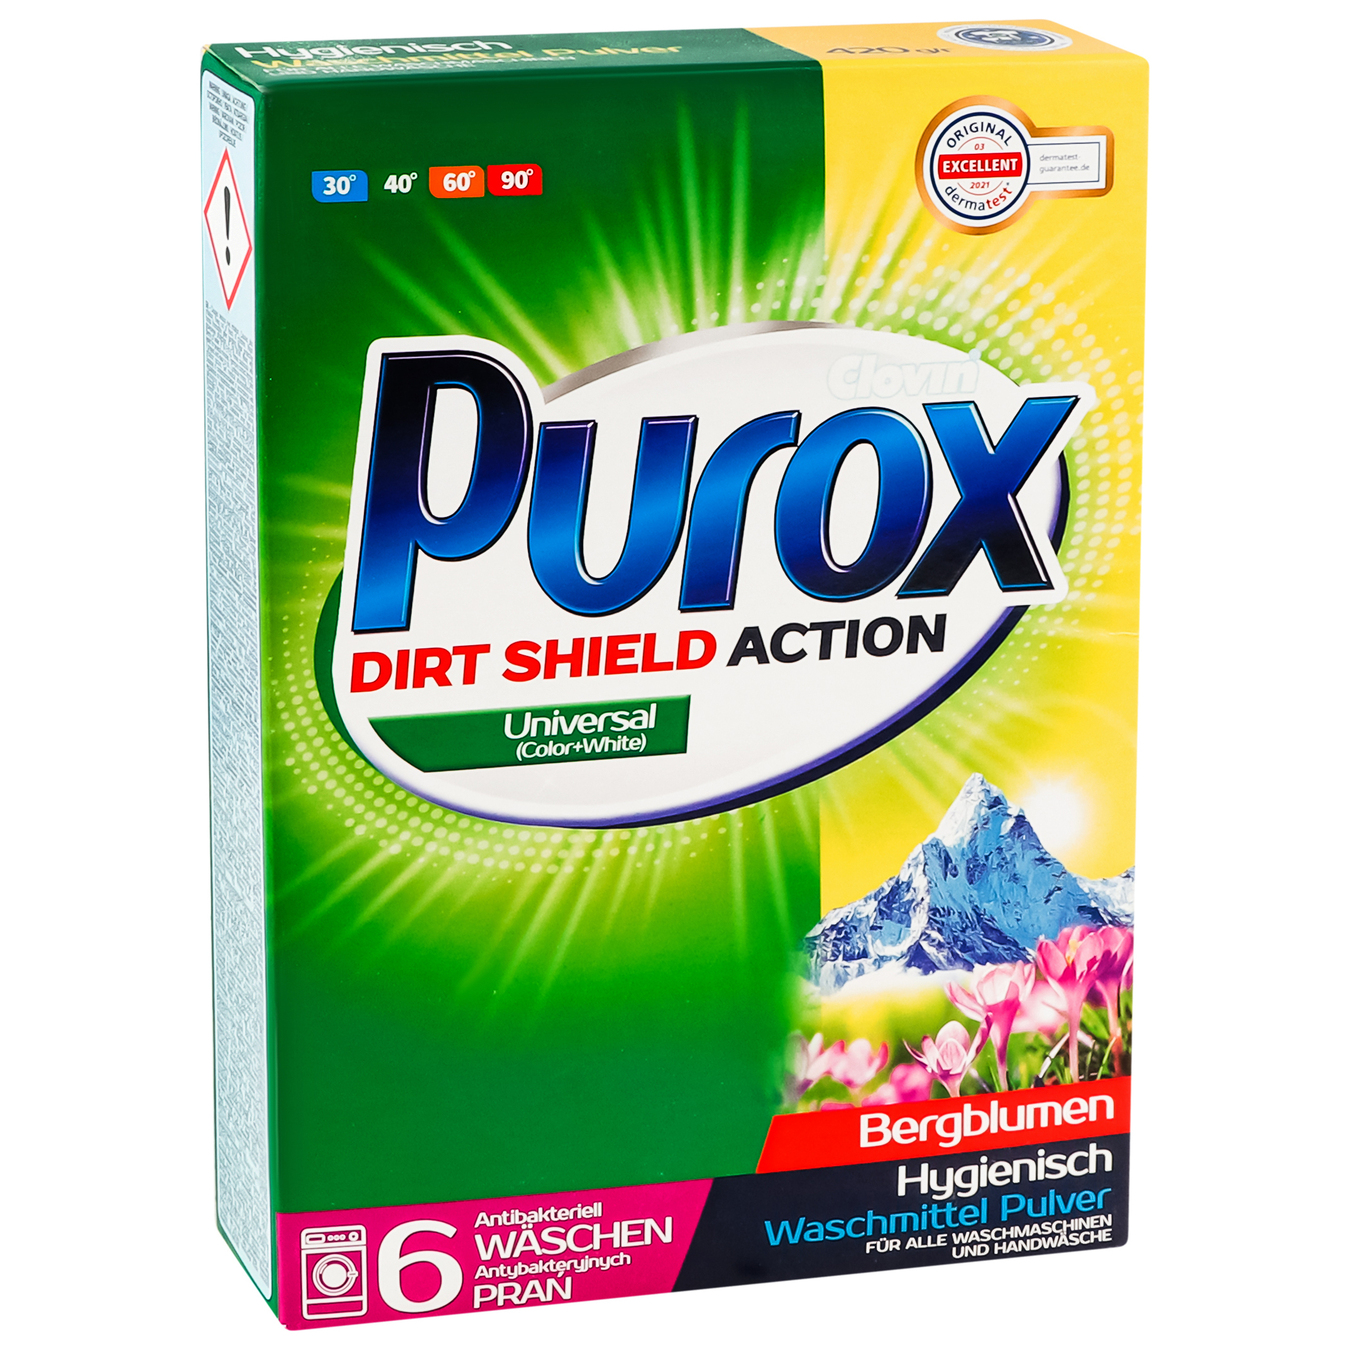 Purox Universal washing machine powder 420g 4